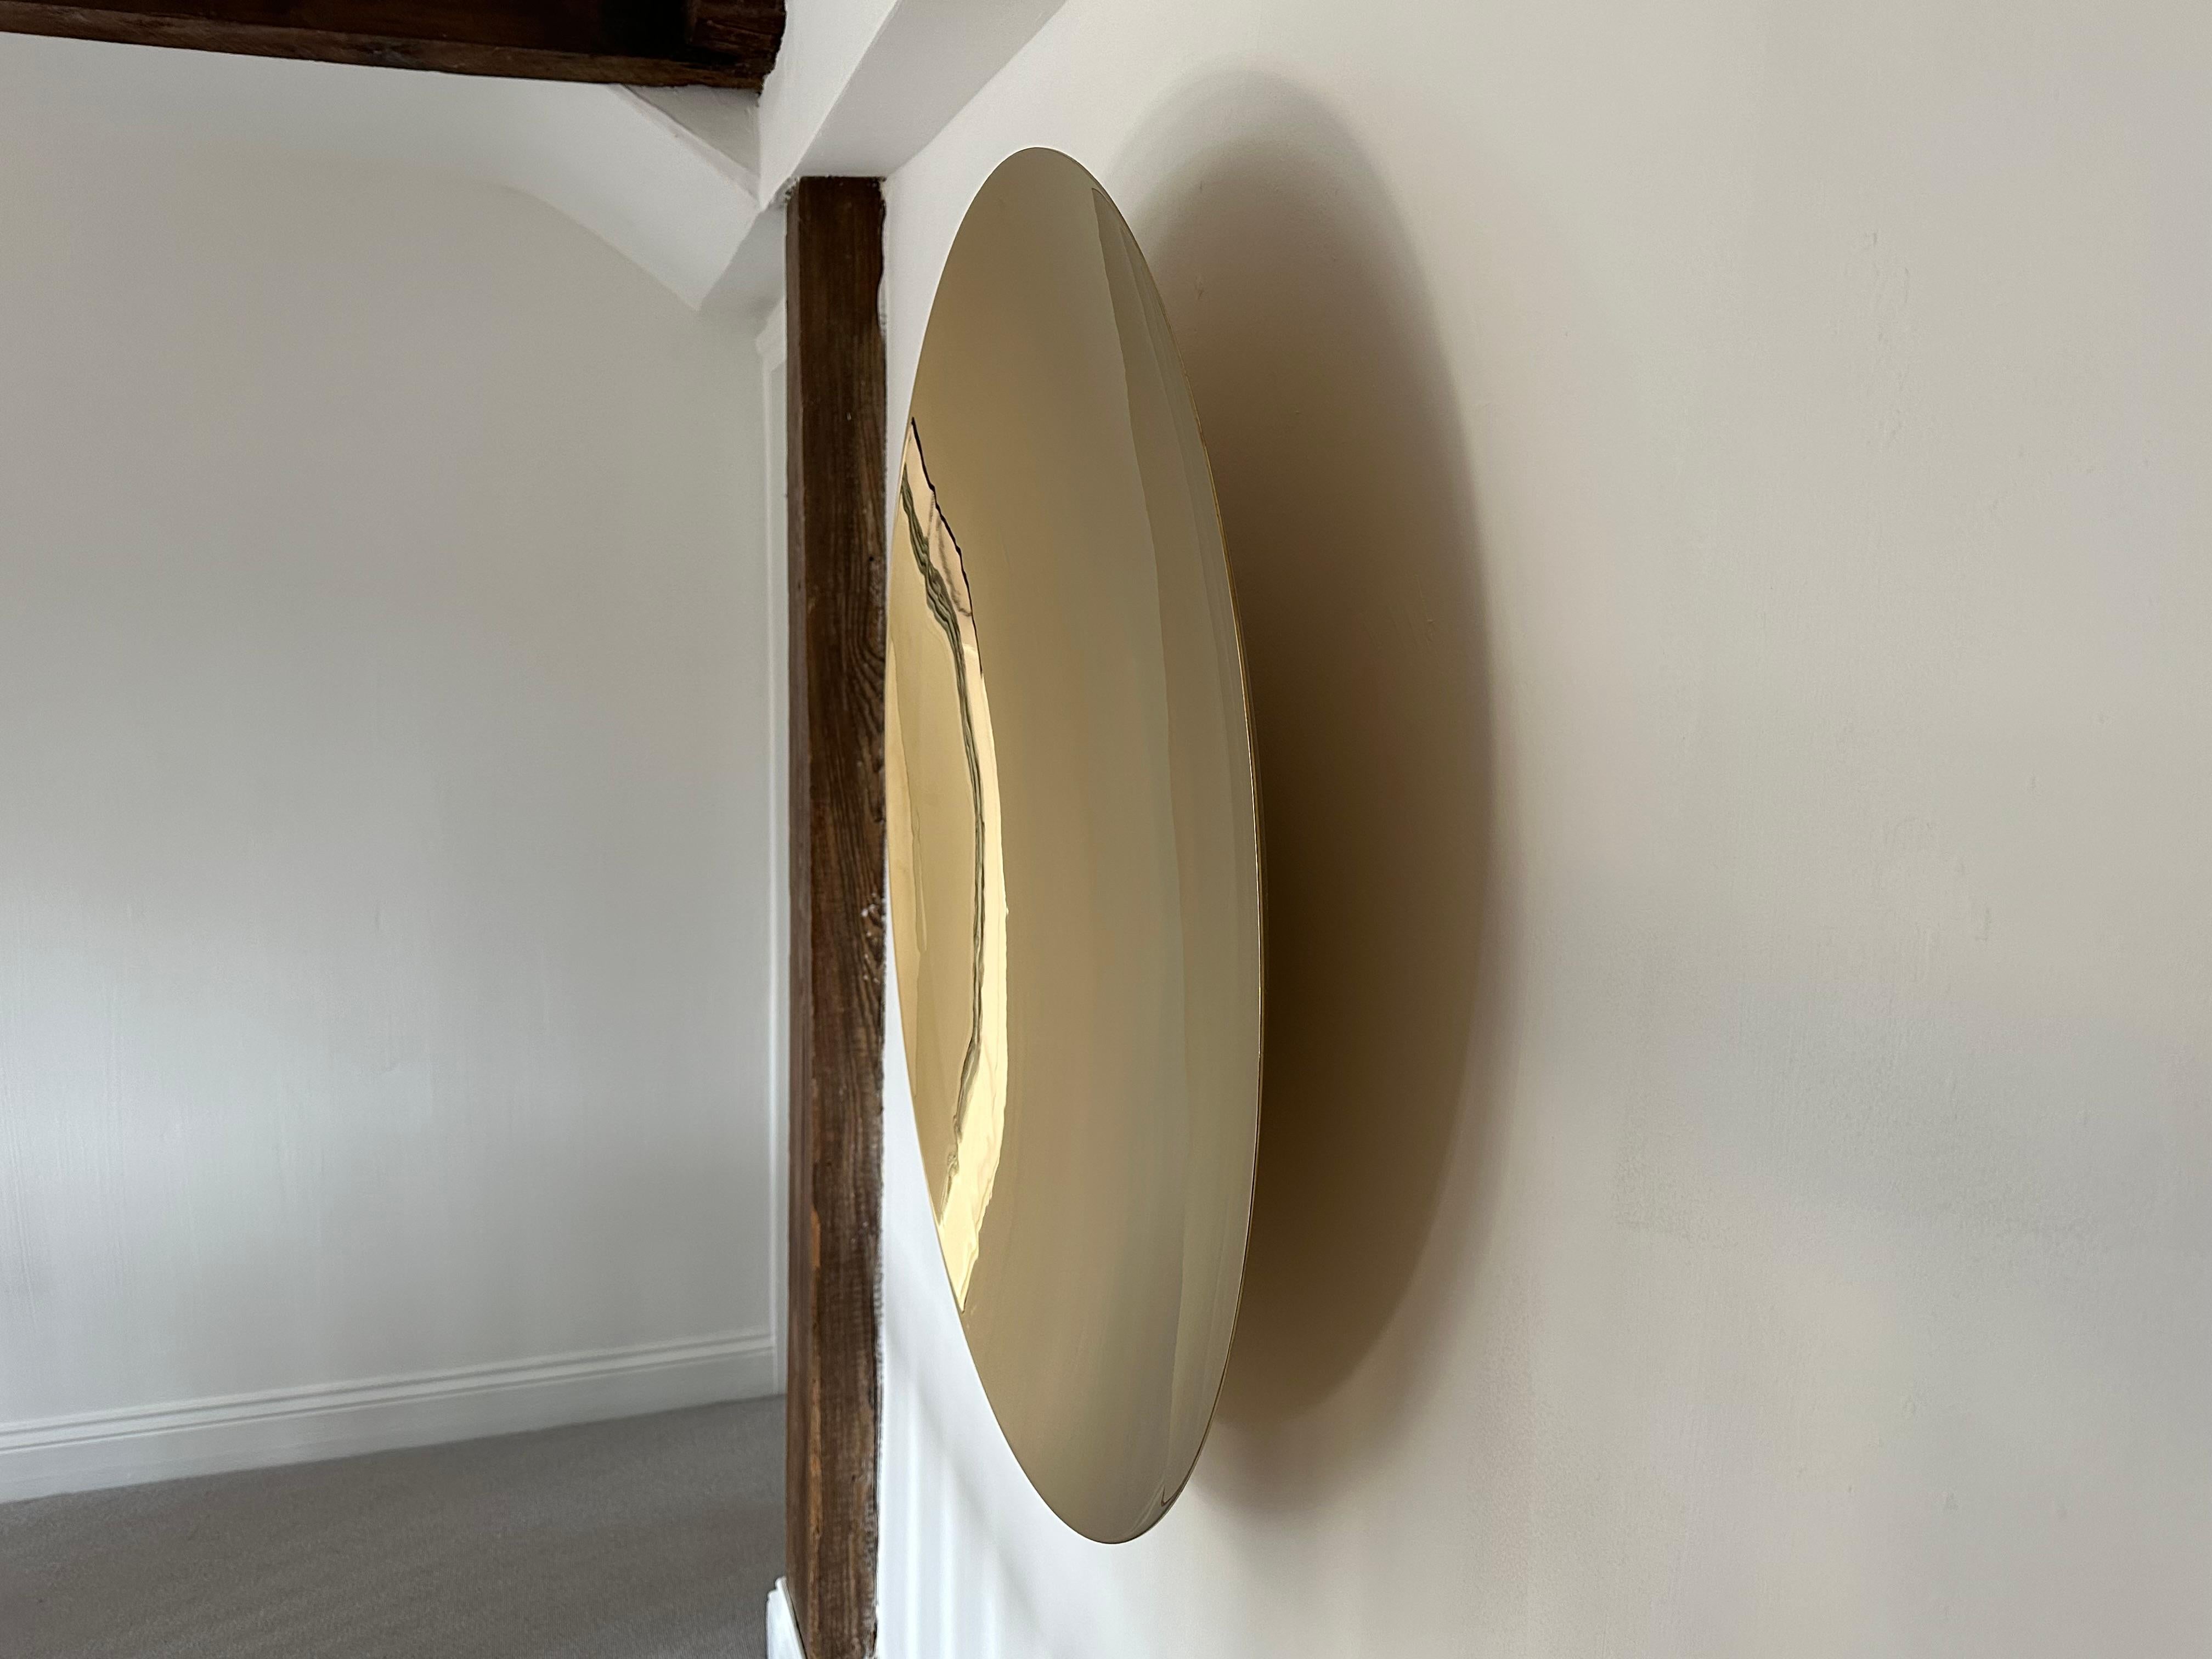 Der Ferrara Nero ist ein hochdekorativer, konvexer Wandspiegel, der einen Blickfang bildet und jedem Raum Eleganz verleiht. 

Der Spiegel selbst ist nach traditionellen Methoden versilbert und aus 6 mm starkem, eisenarmem Glas mit einer Krümmung